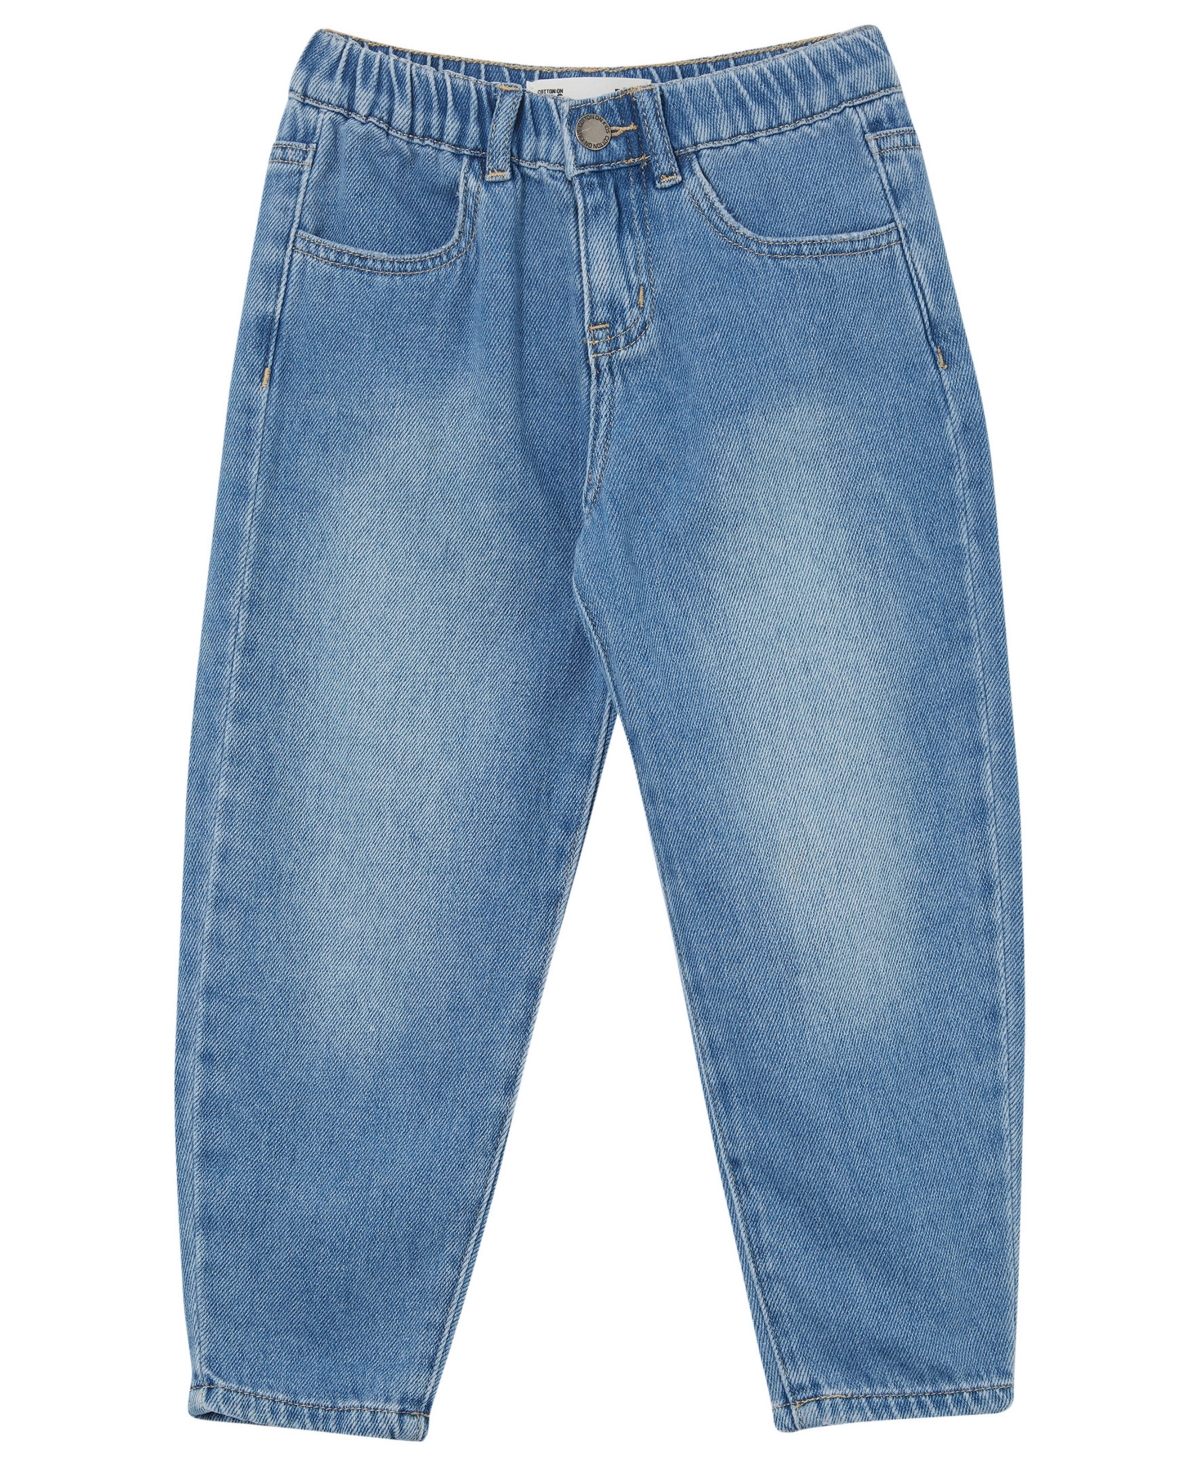 Cotton On Little Girls Denim Jordan Slouch Shorts In Weekend Blue Wash